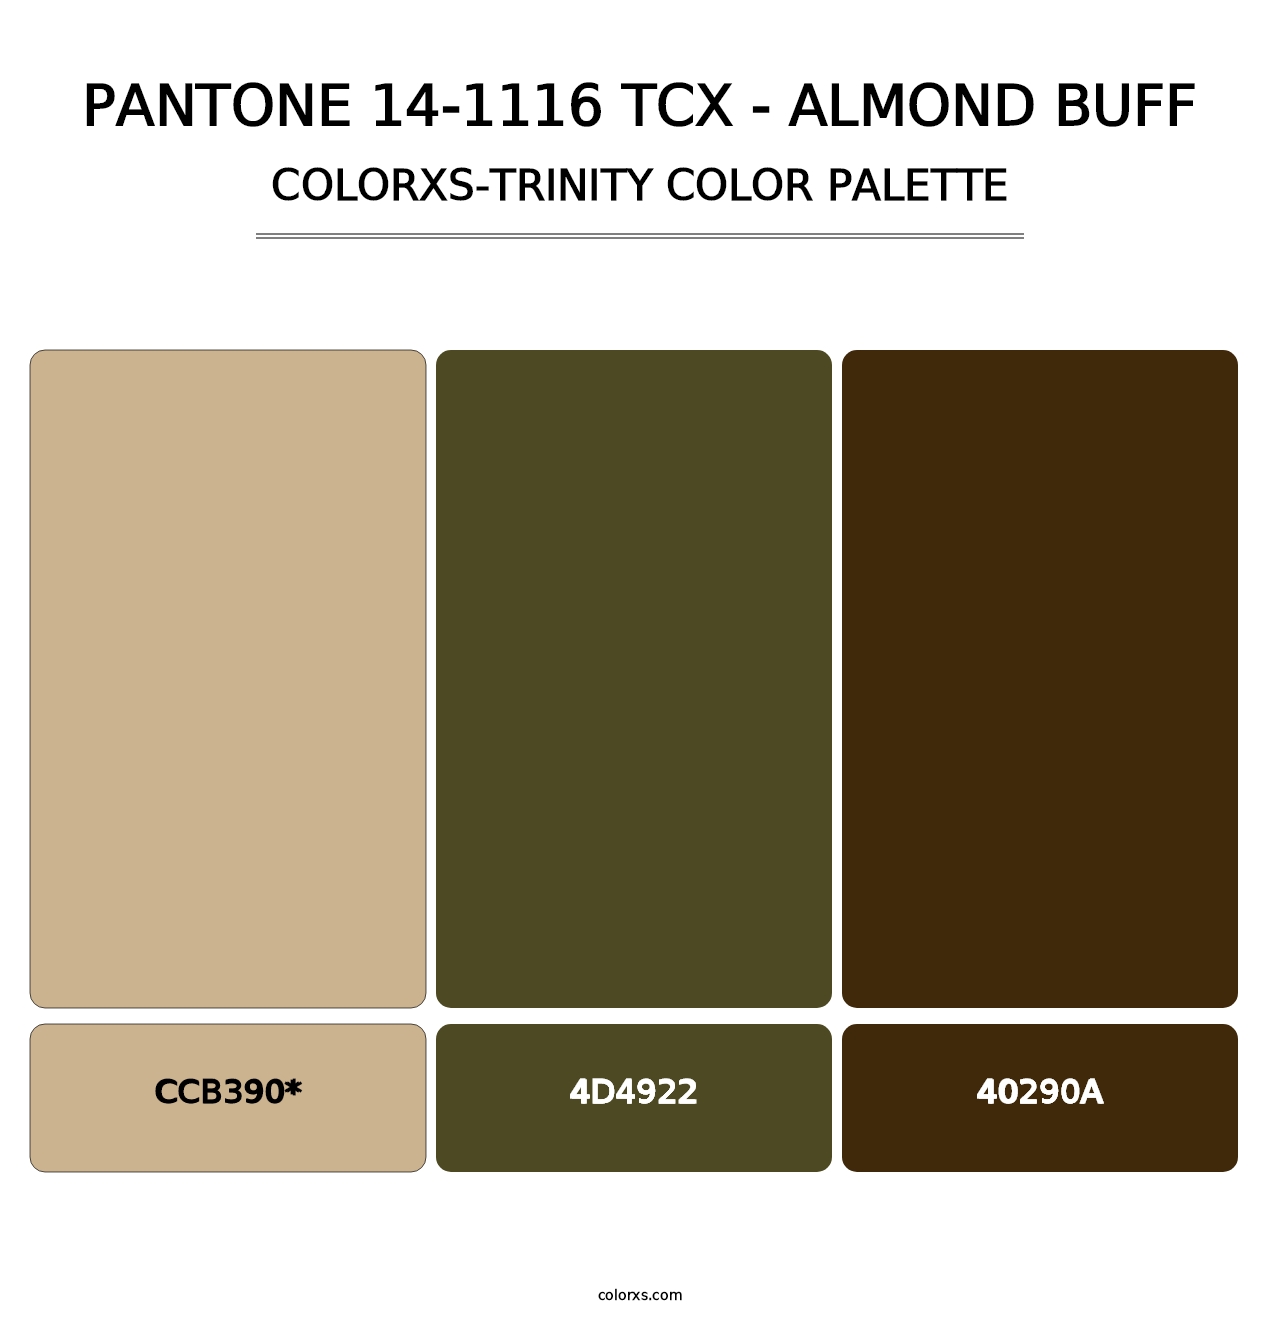 PANTONE 14-1116 TCX - Almond Buff - Colorxs Trinity Palette